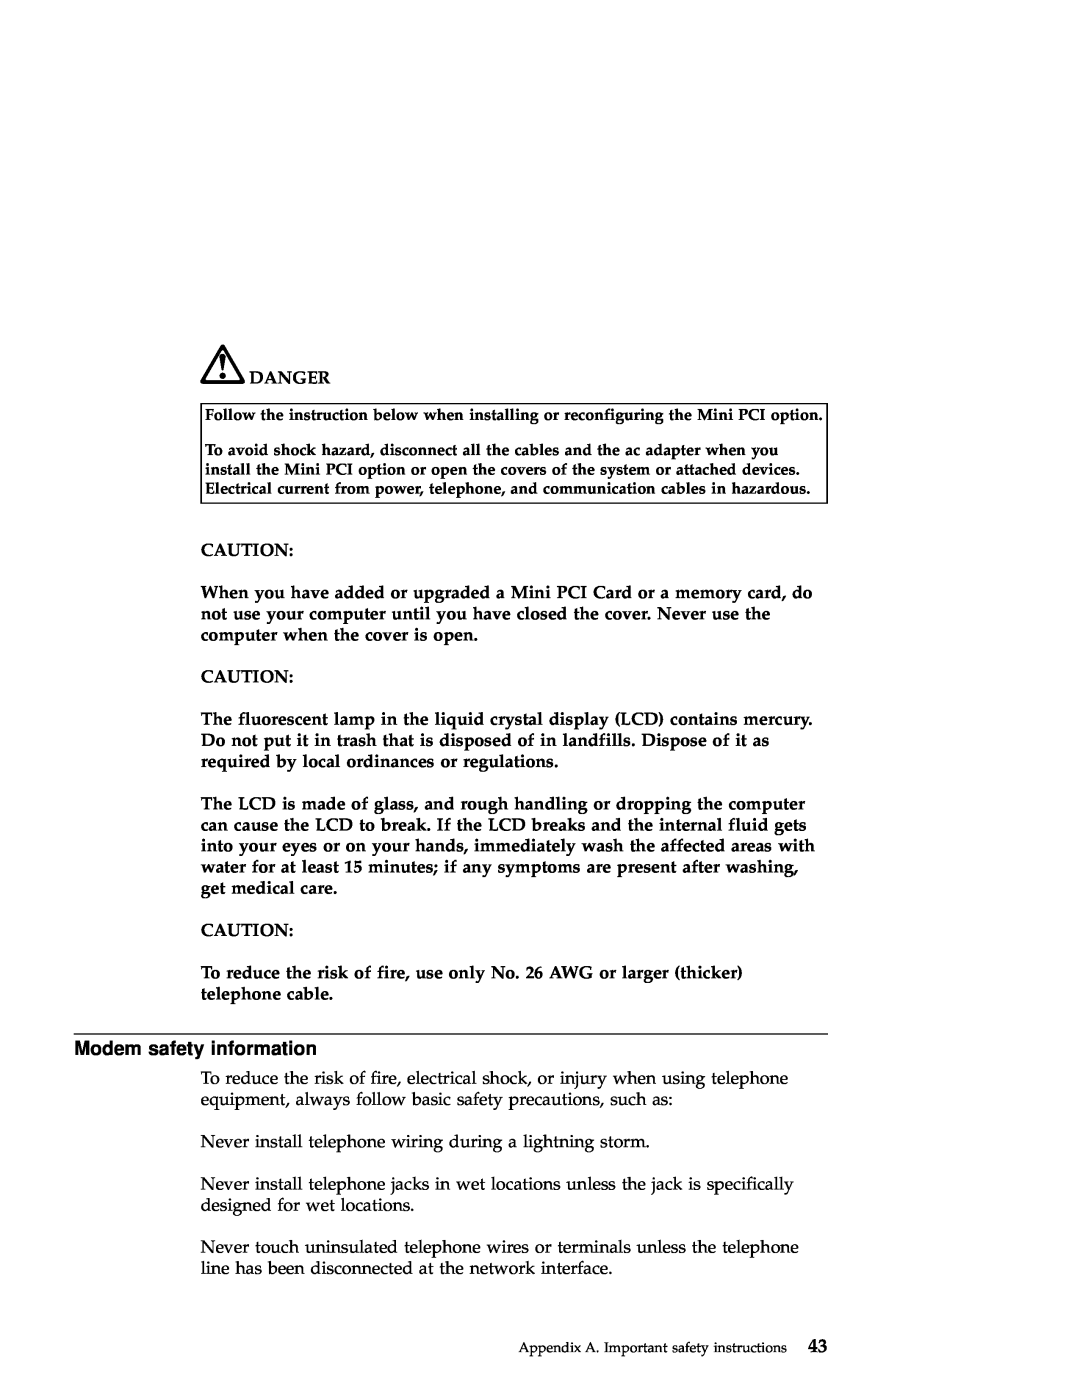 IBM A22 manual Modem safety information, Danger 